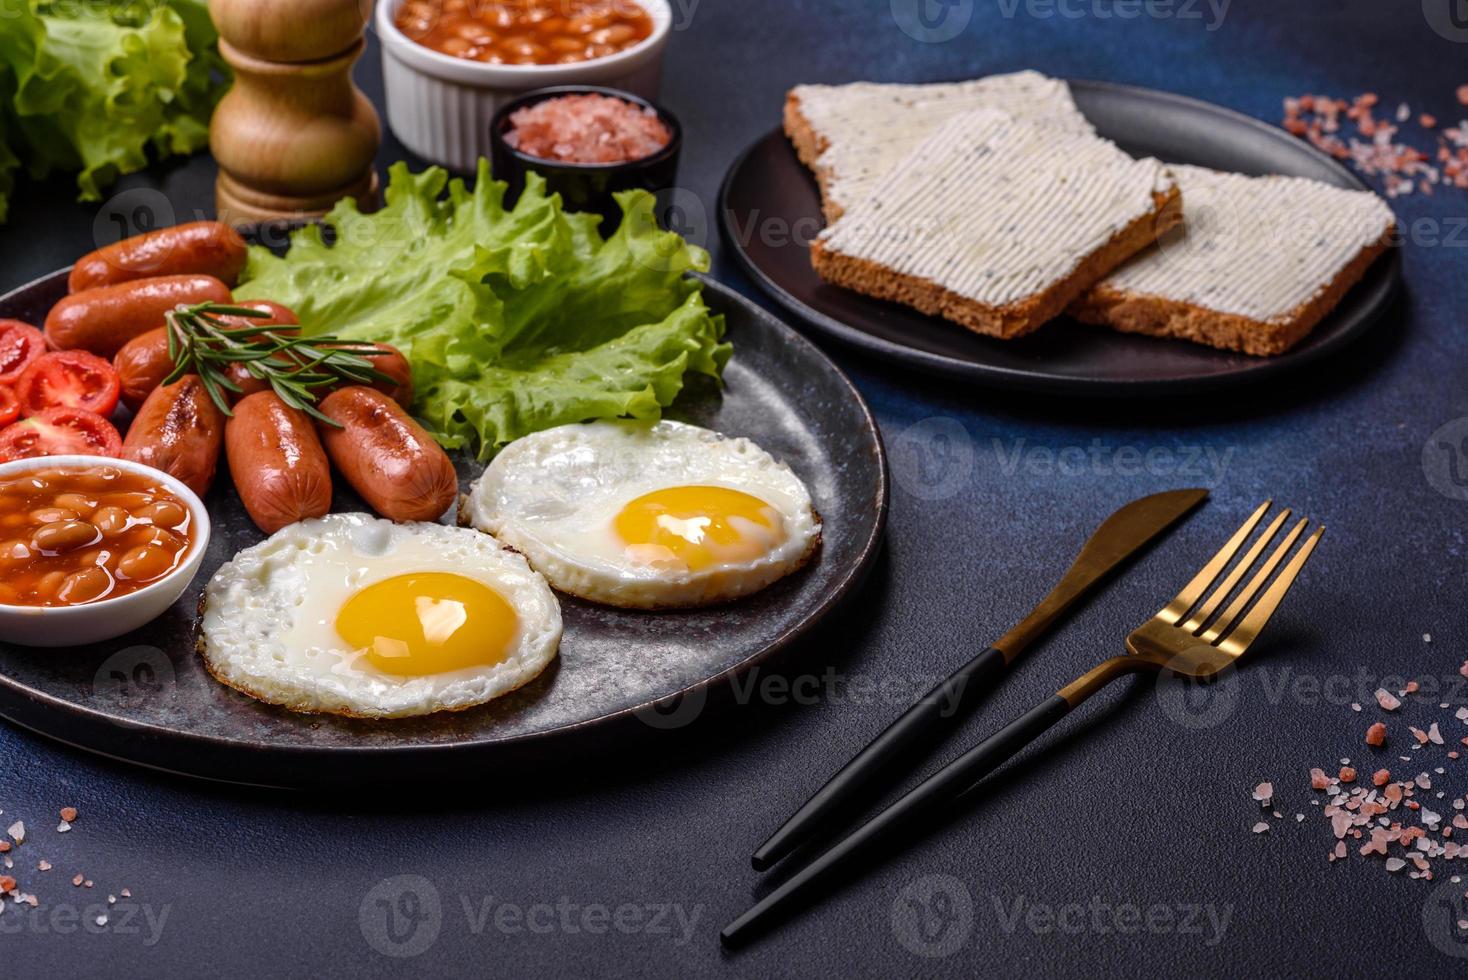 café da manhã inglês tradicional com ovos, torradas, salsichas, feijão, especiarias e ervas em um prato de cerâmica cinza foto